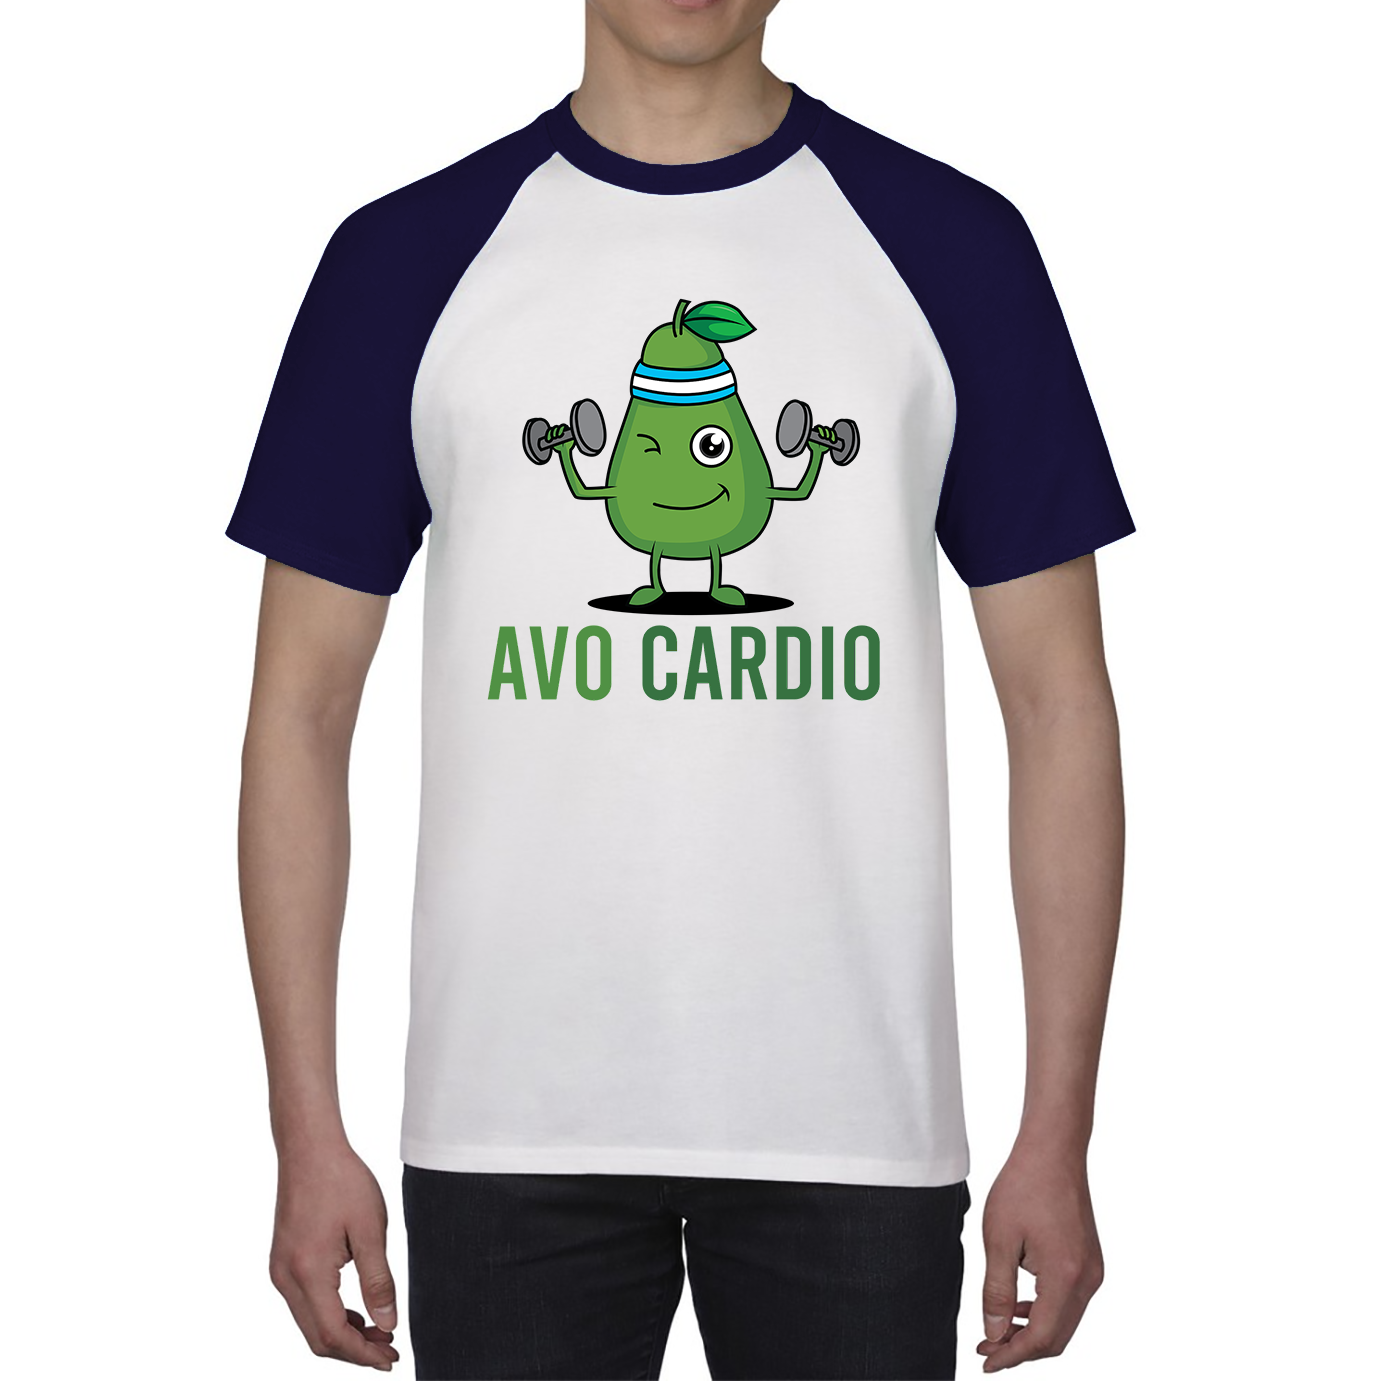 Avo Cardio Funny Avocado Fitness Baseball T Shirt